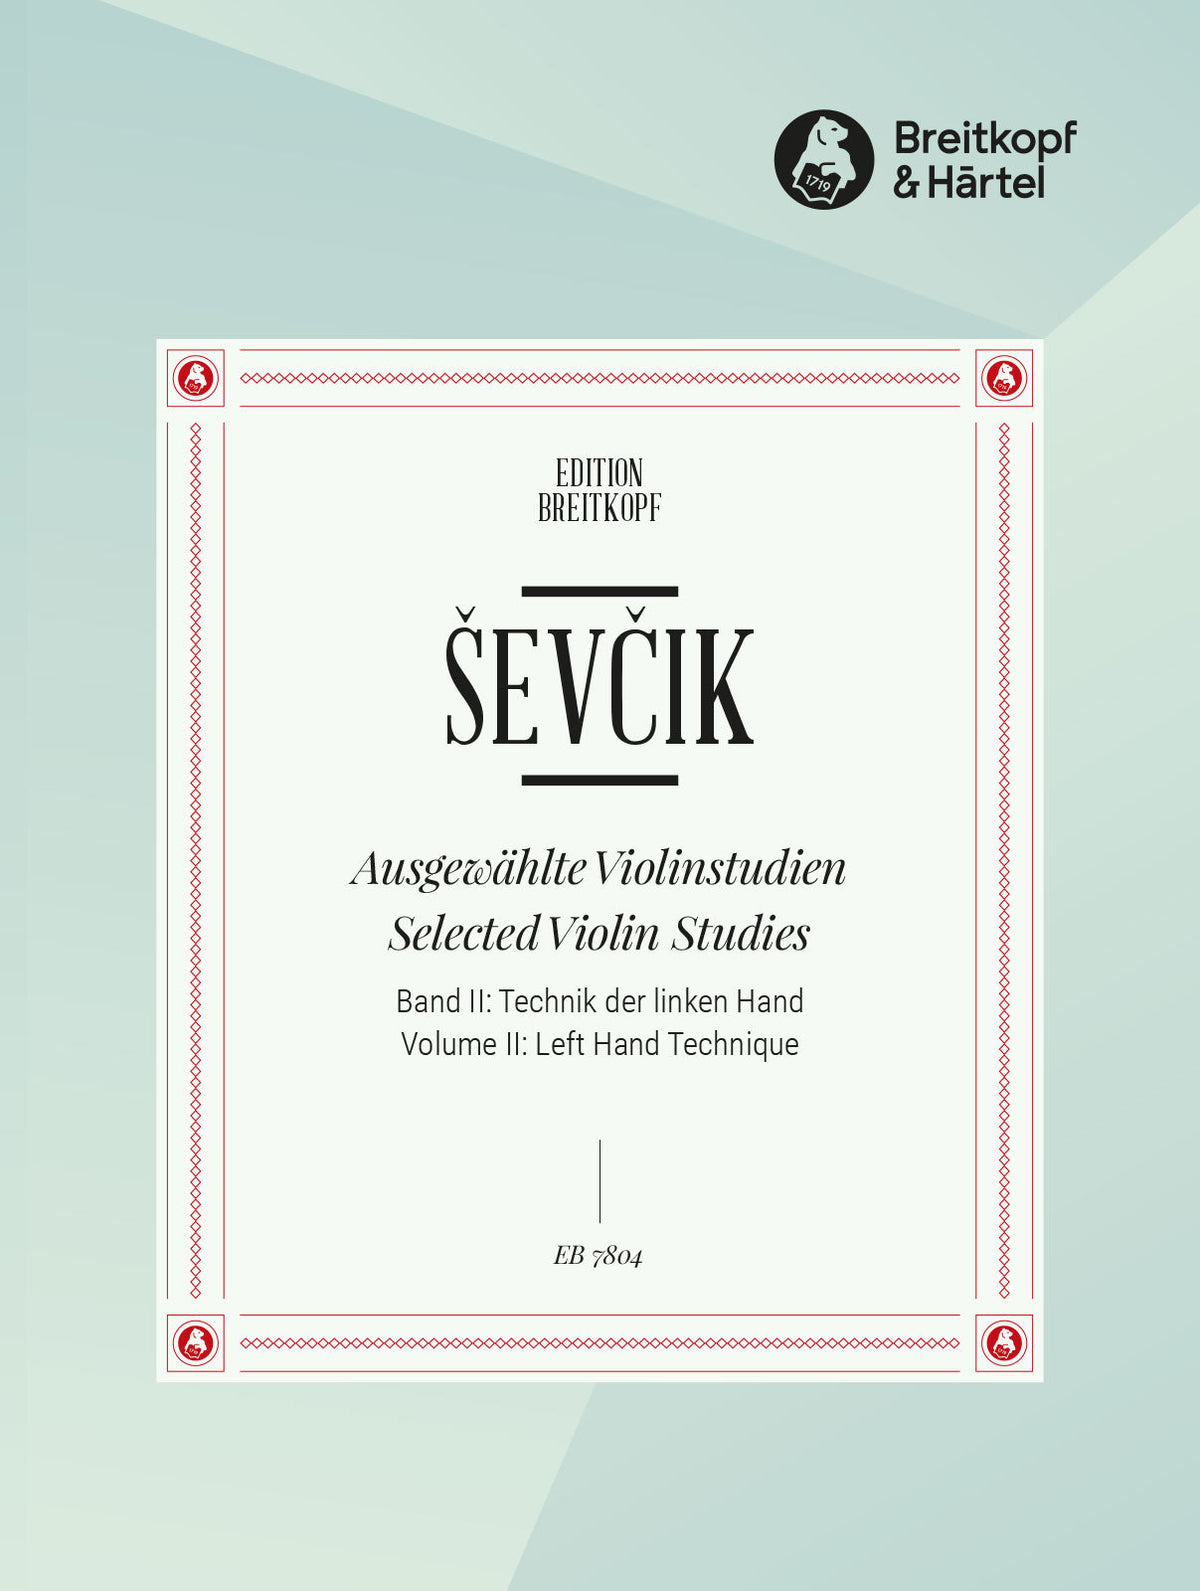 Sevcik Vol. II: Left Hand Technique Selected Violin Studies